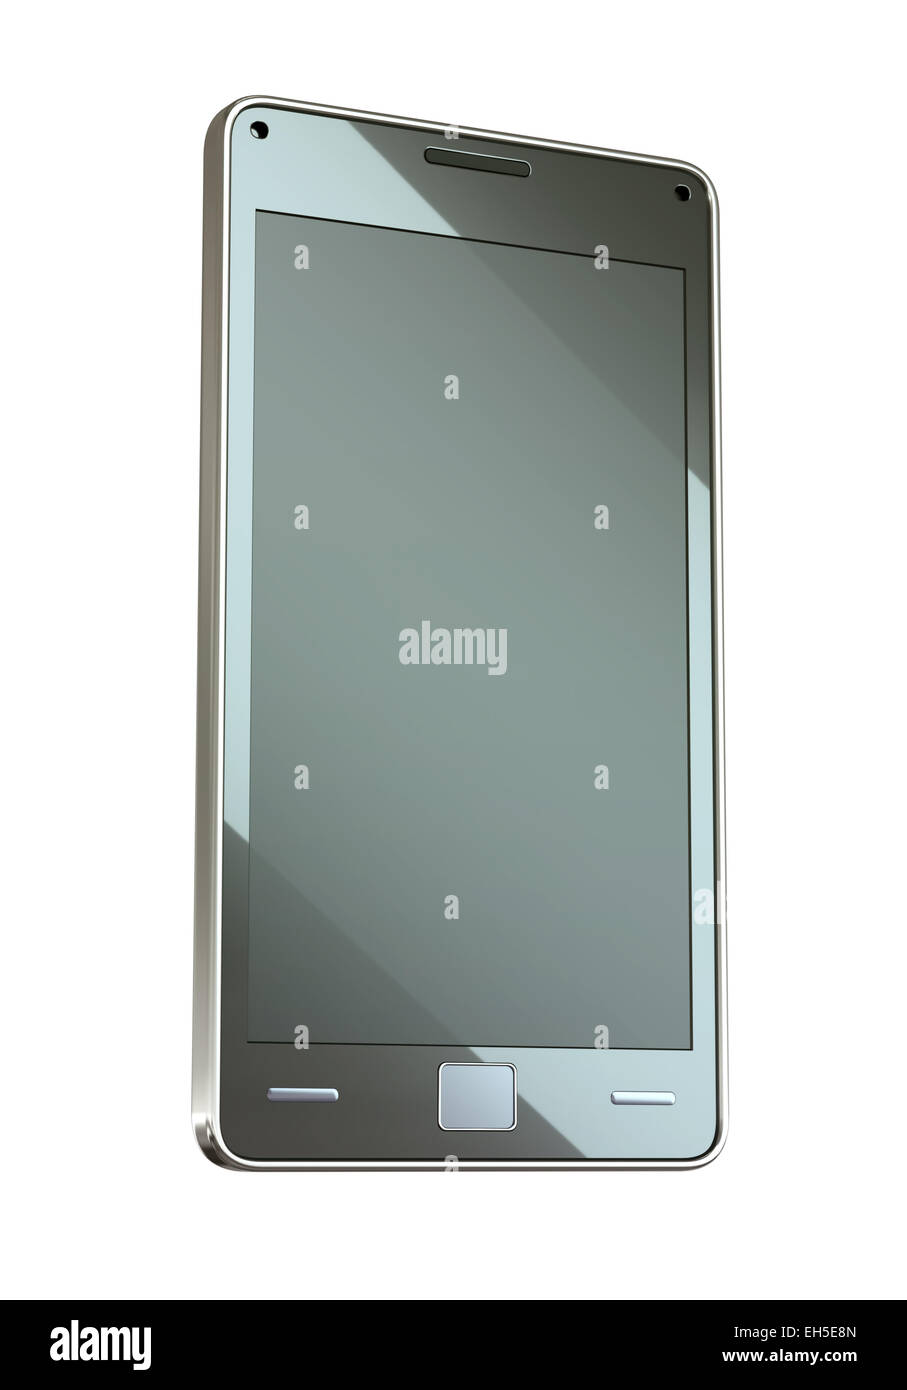 Celular o teléfono inteligente con pantalla táctil aislado en blanco Foto de stock